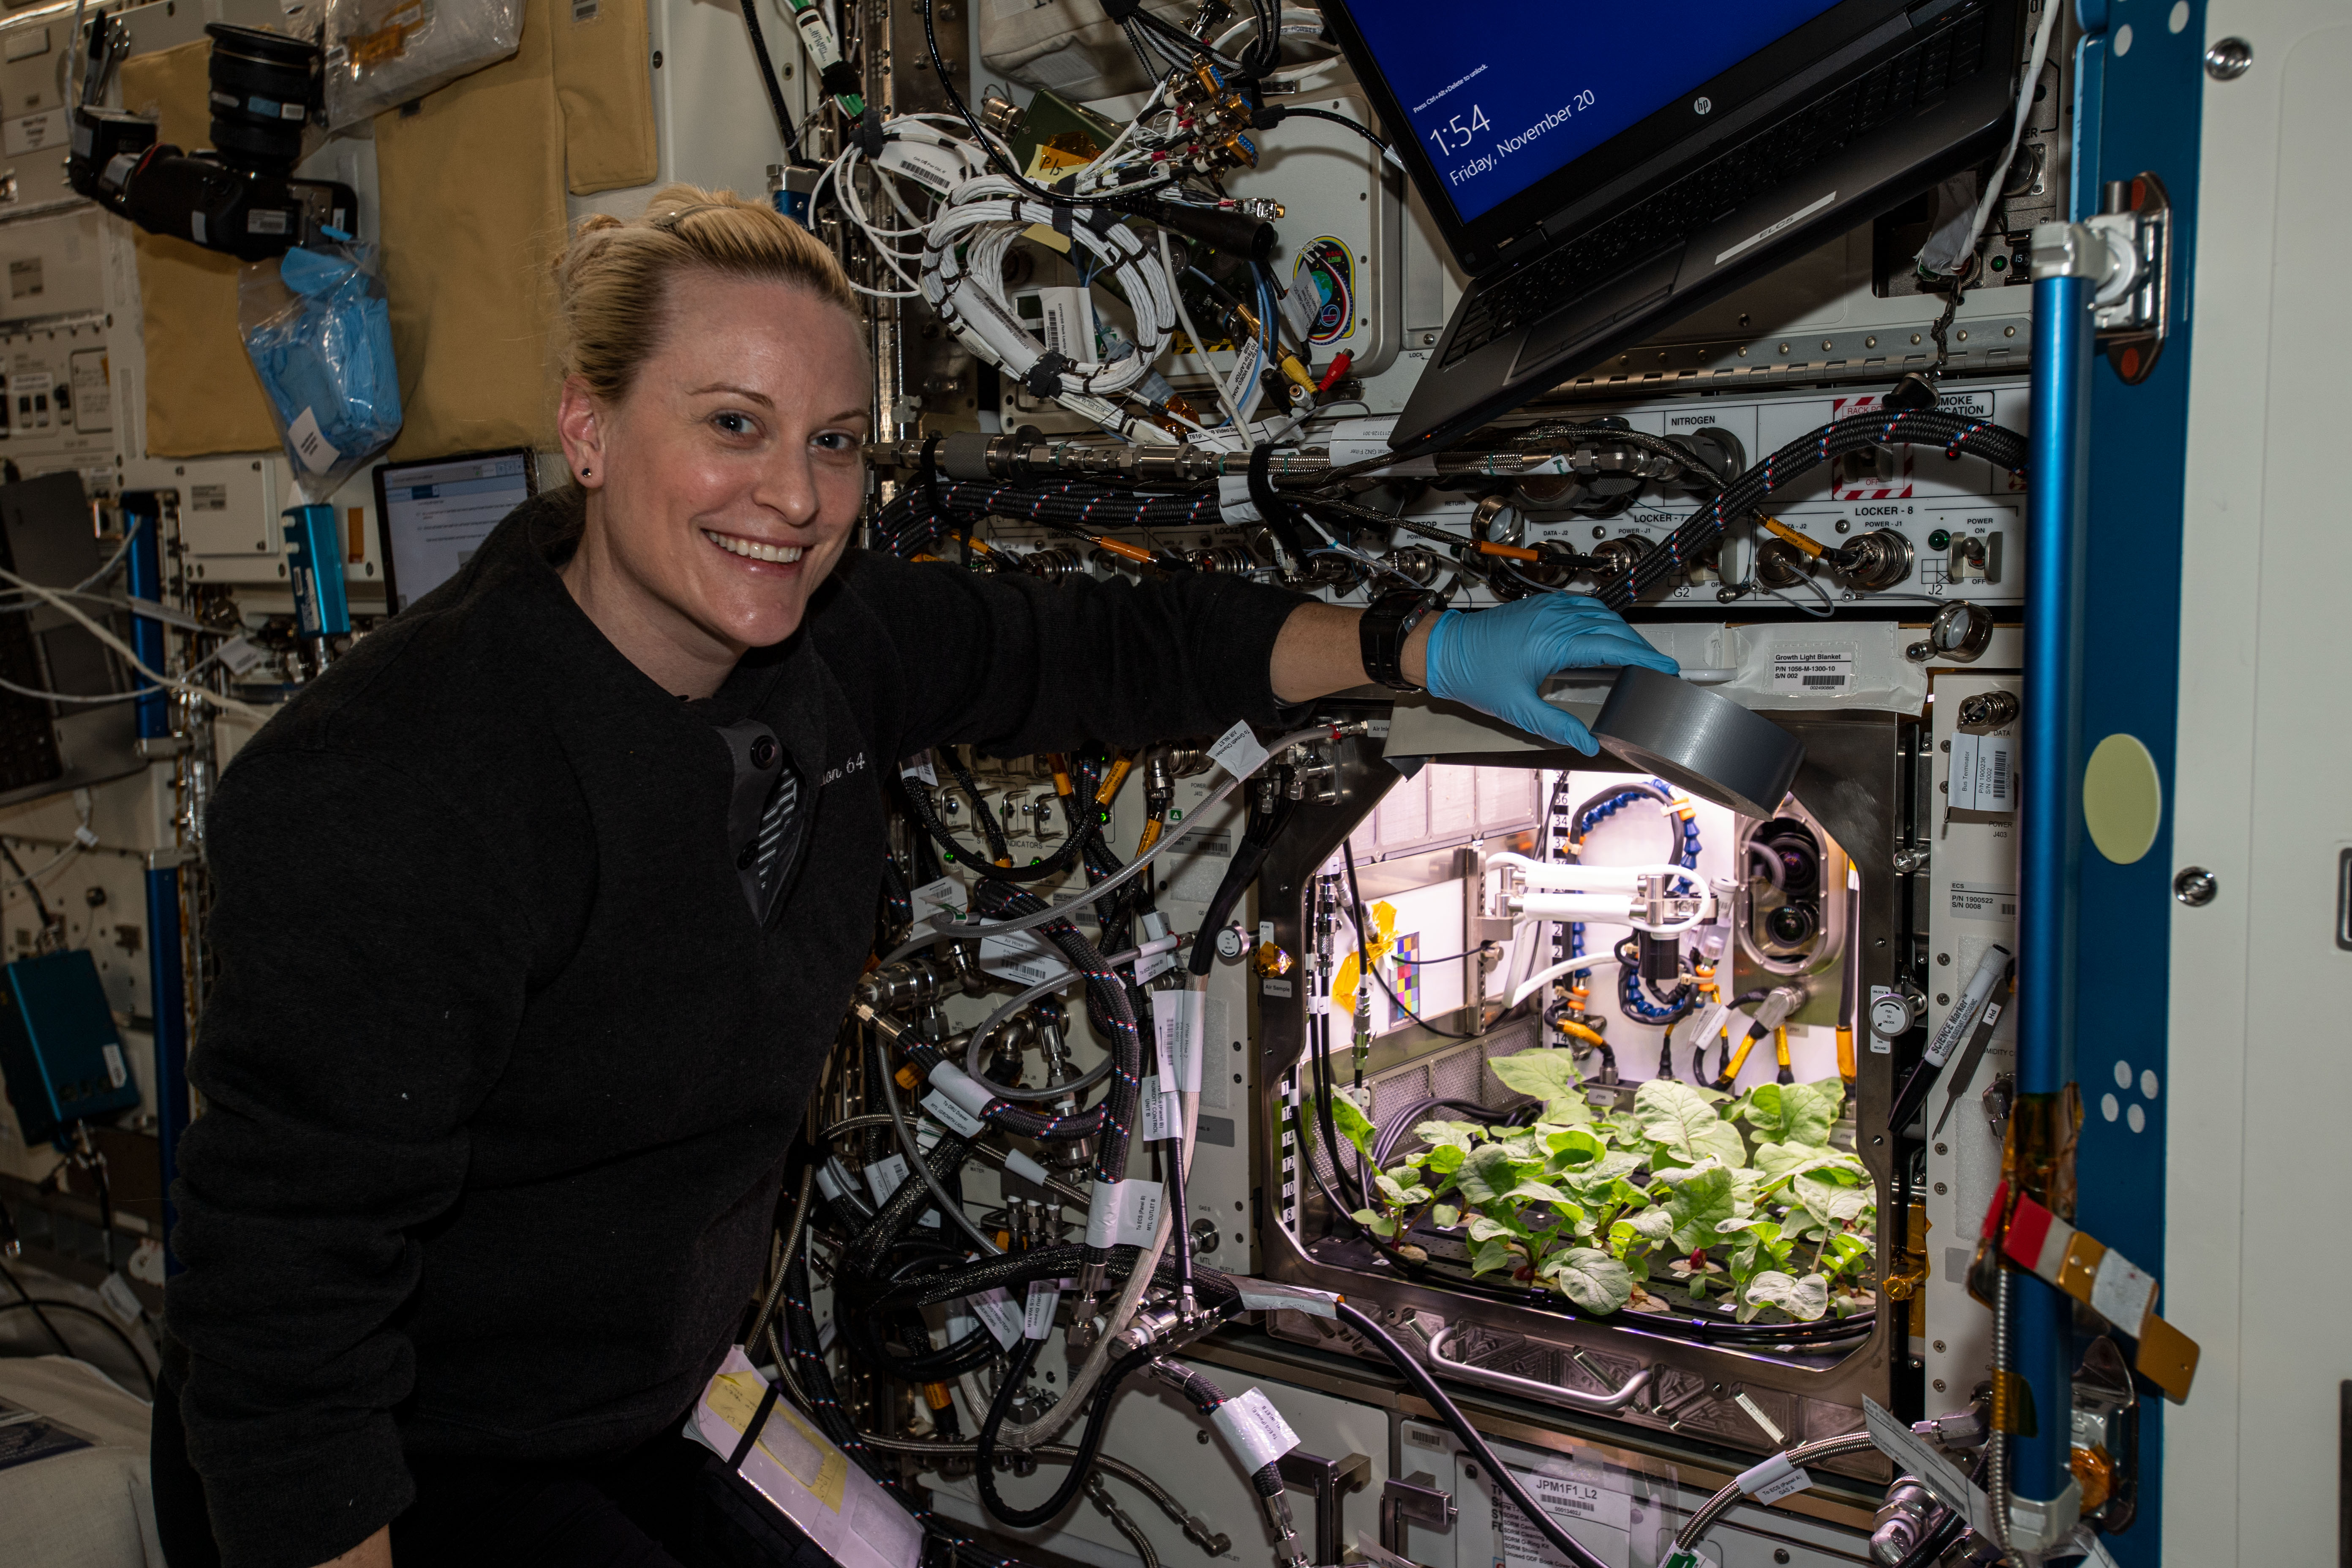 Первый овощ выращенный в космосе. Опыты с растениями на МКС (Международная Космическая станция). Оранжерея Veggie МКС. Первый редис выращенный на МКС. Растения в космосе.